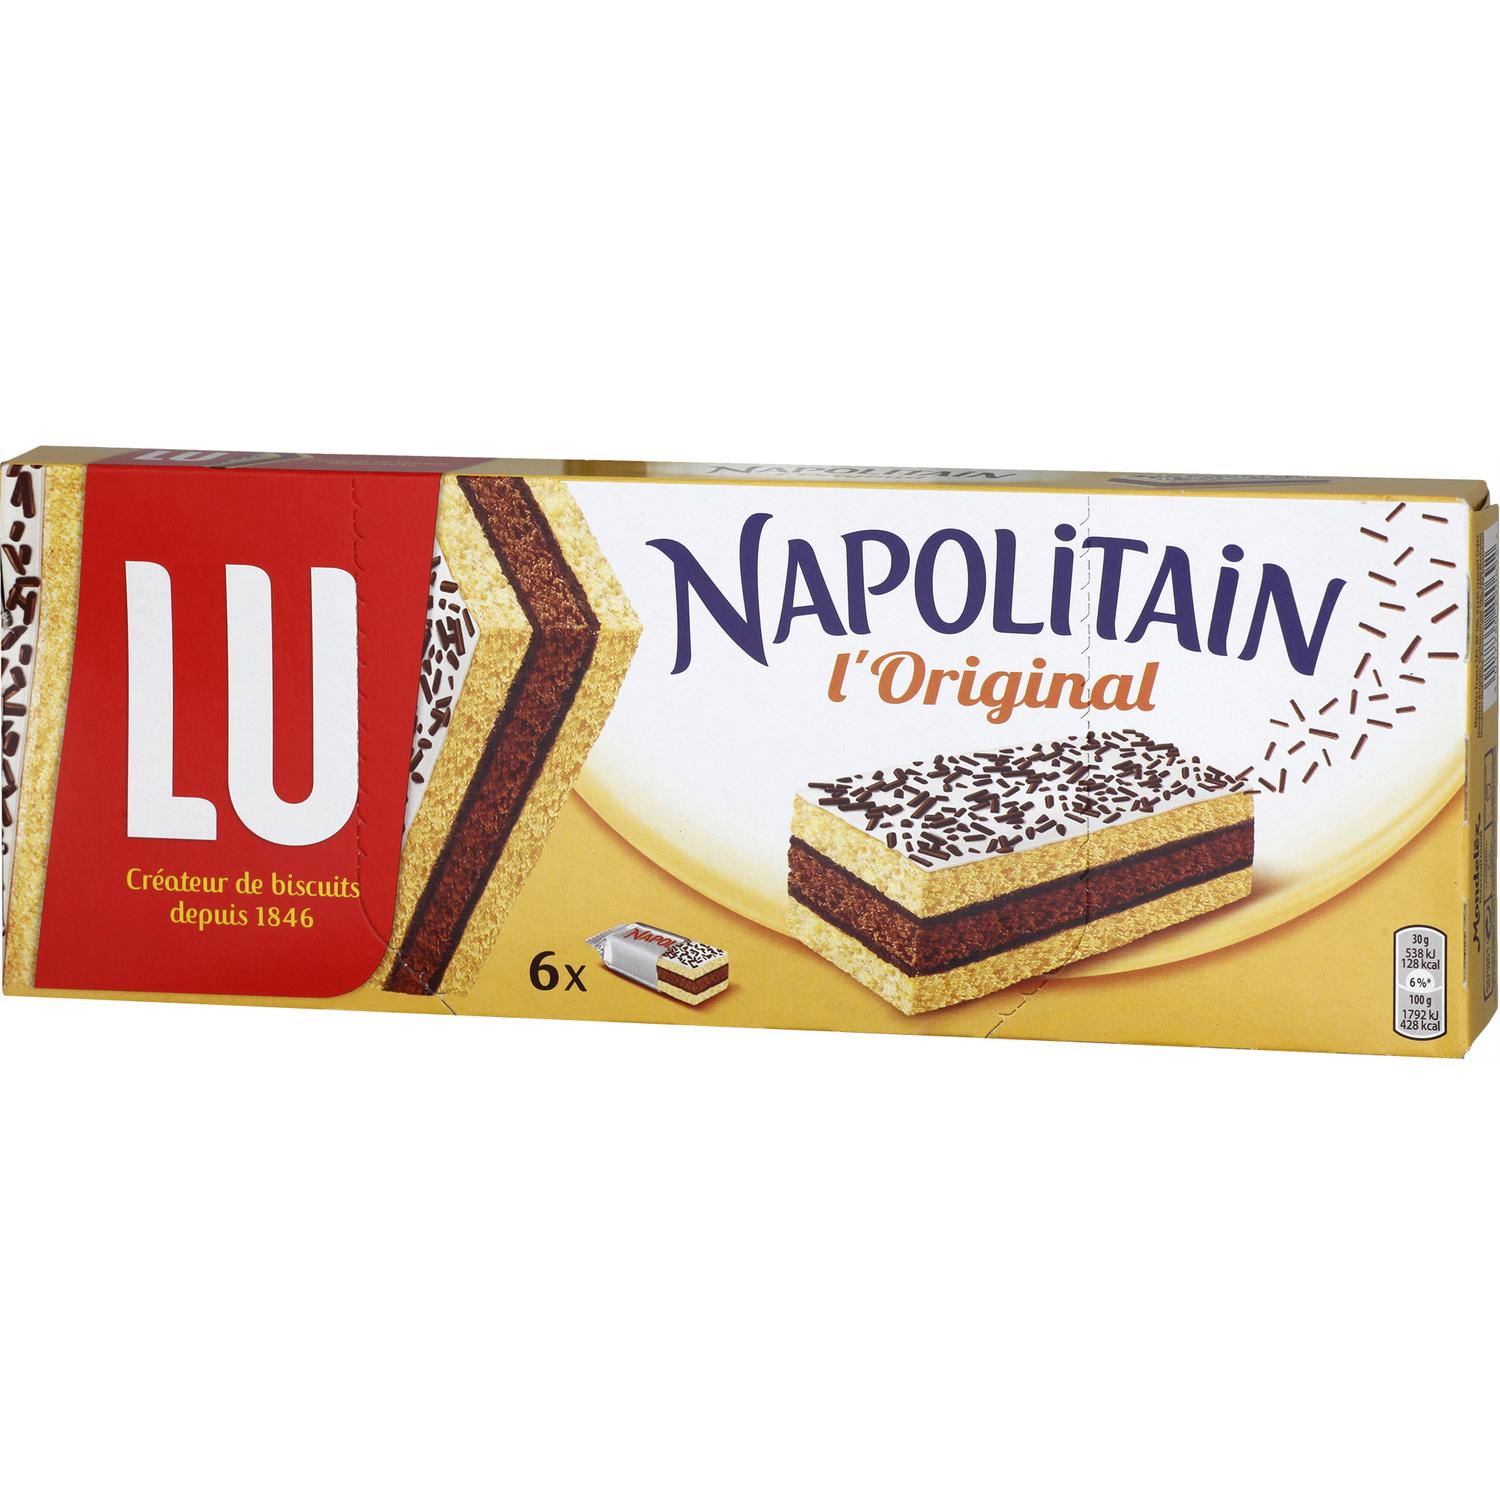 Lu Napolitain Chocolate Cakes